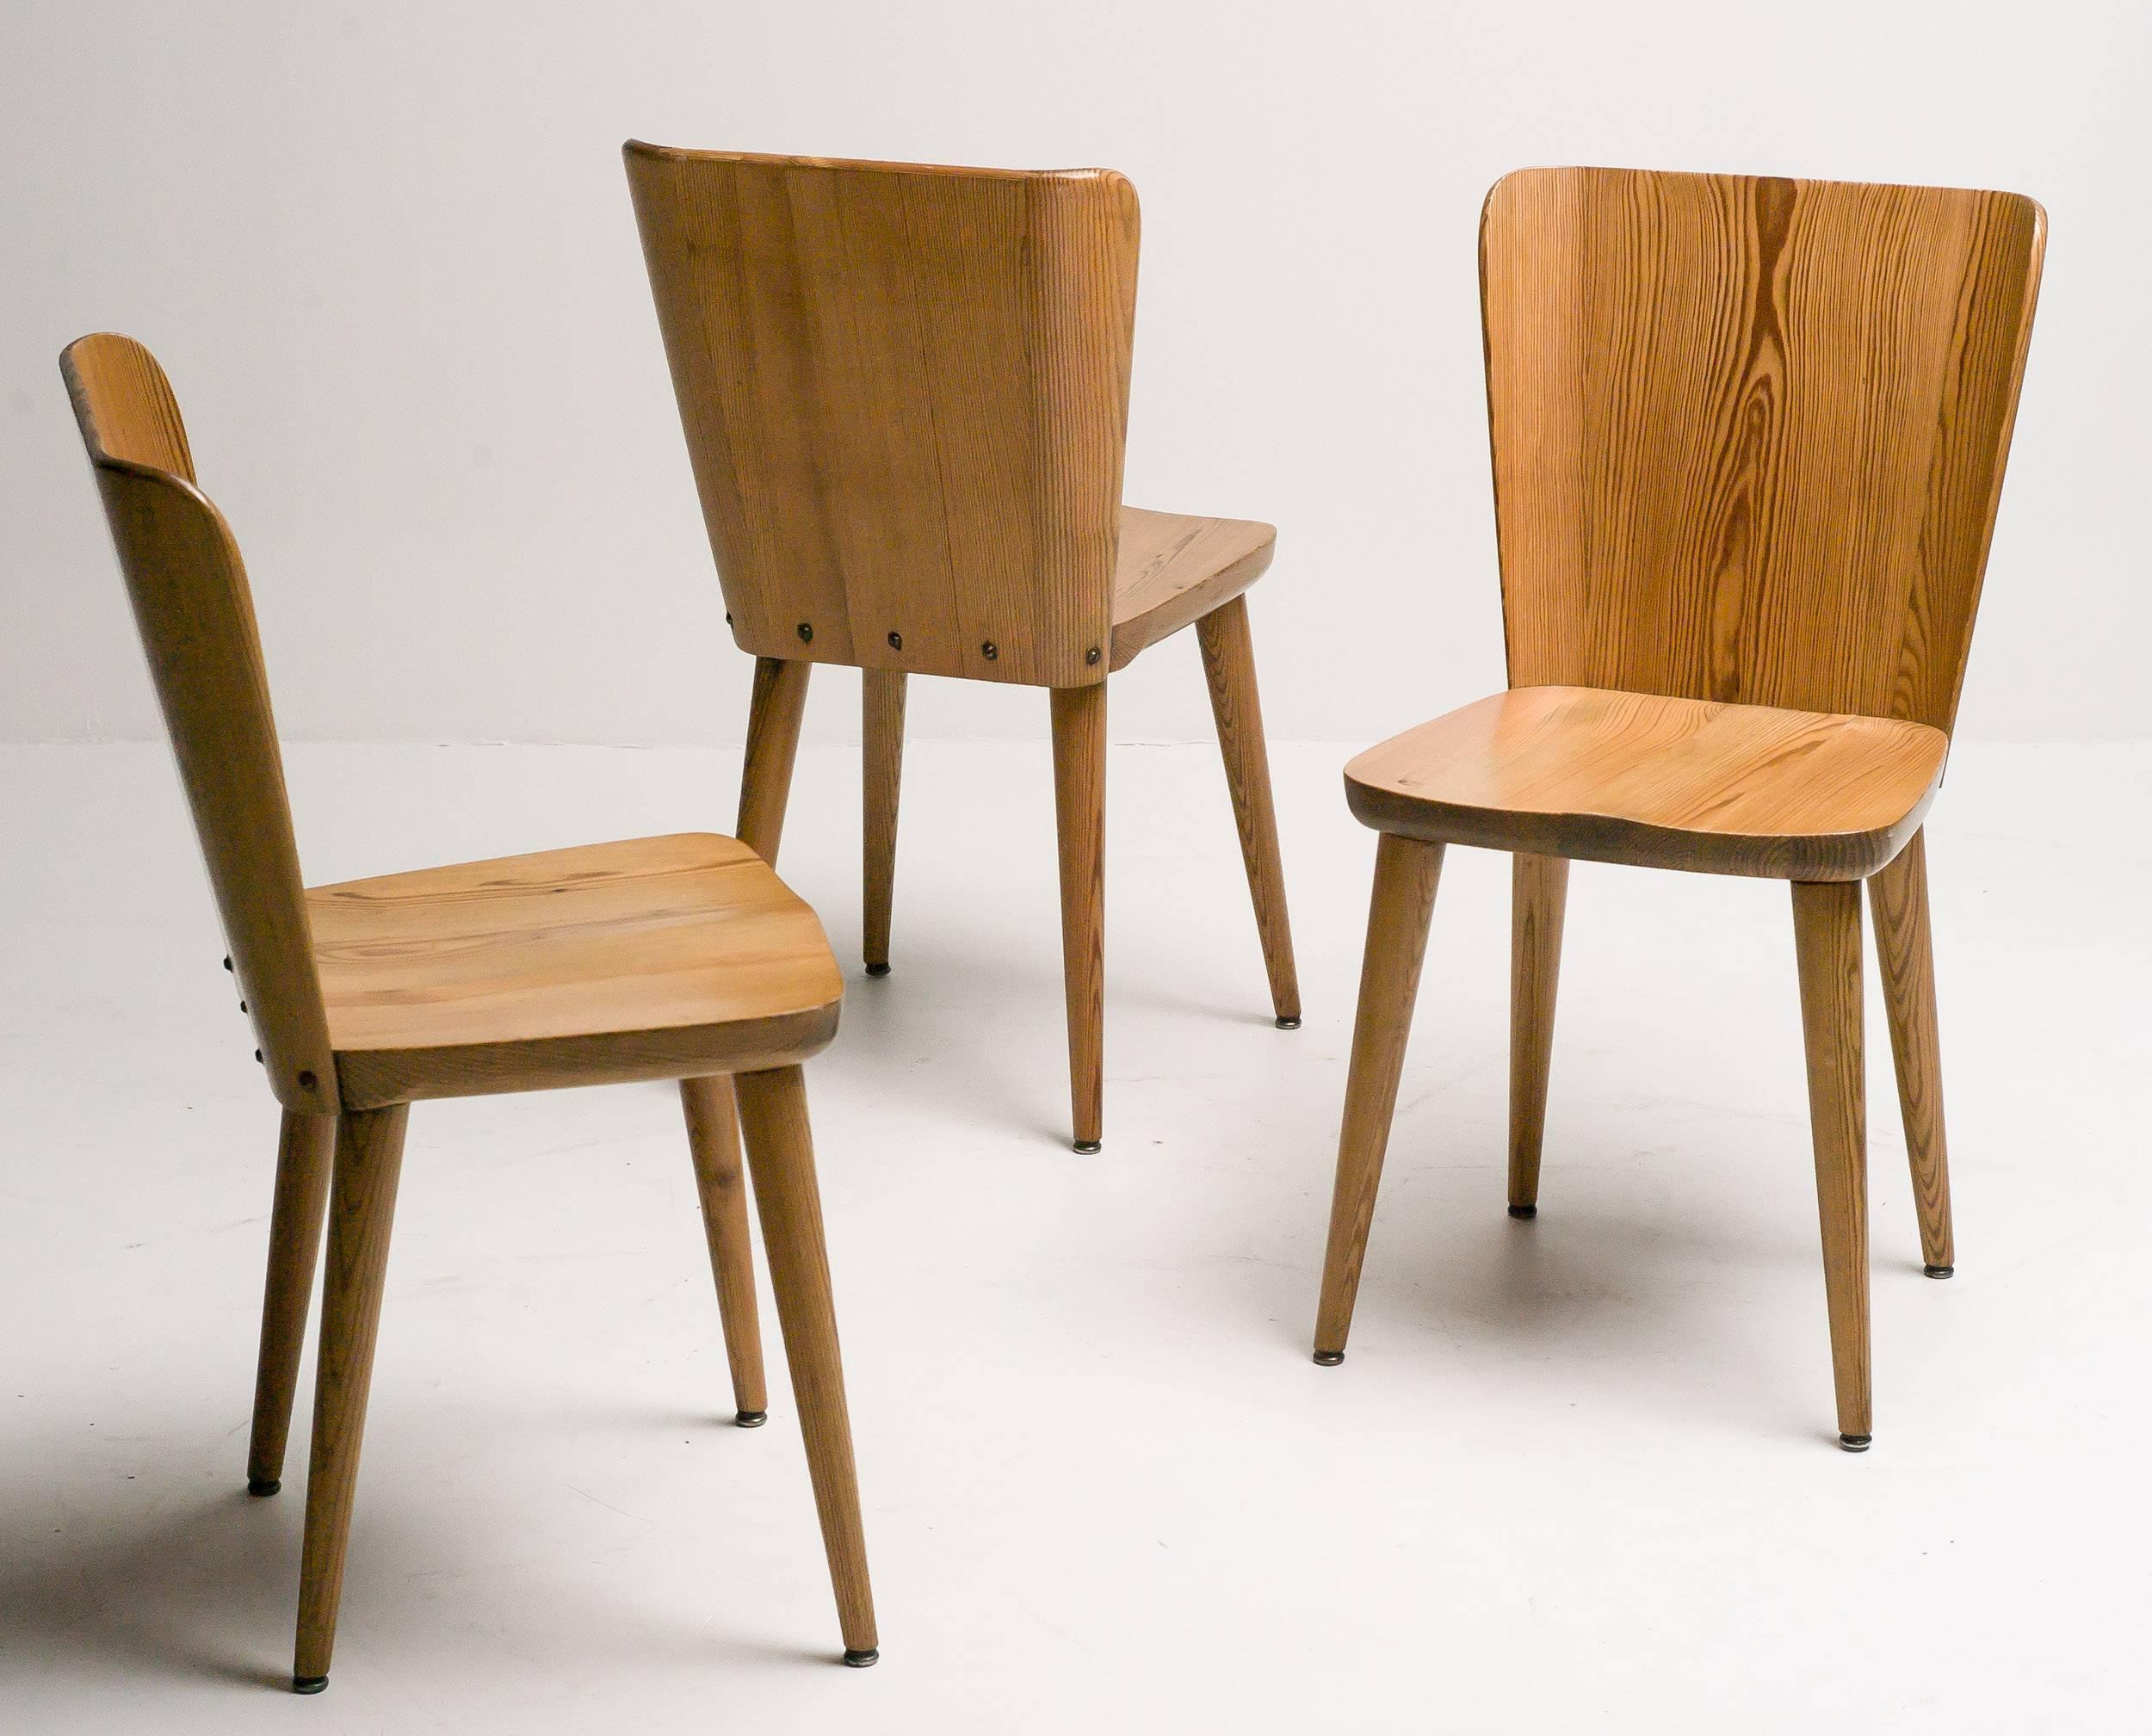 Scandinavian Modern Mid-Century Swedish Chairs in Pine